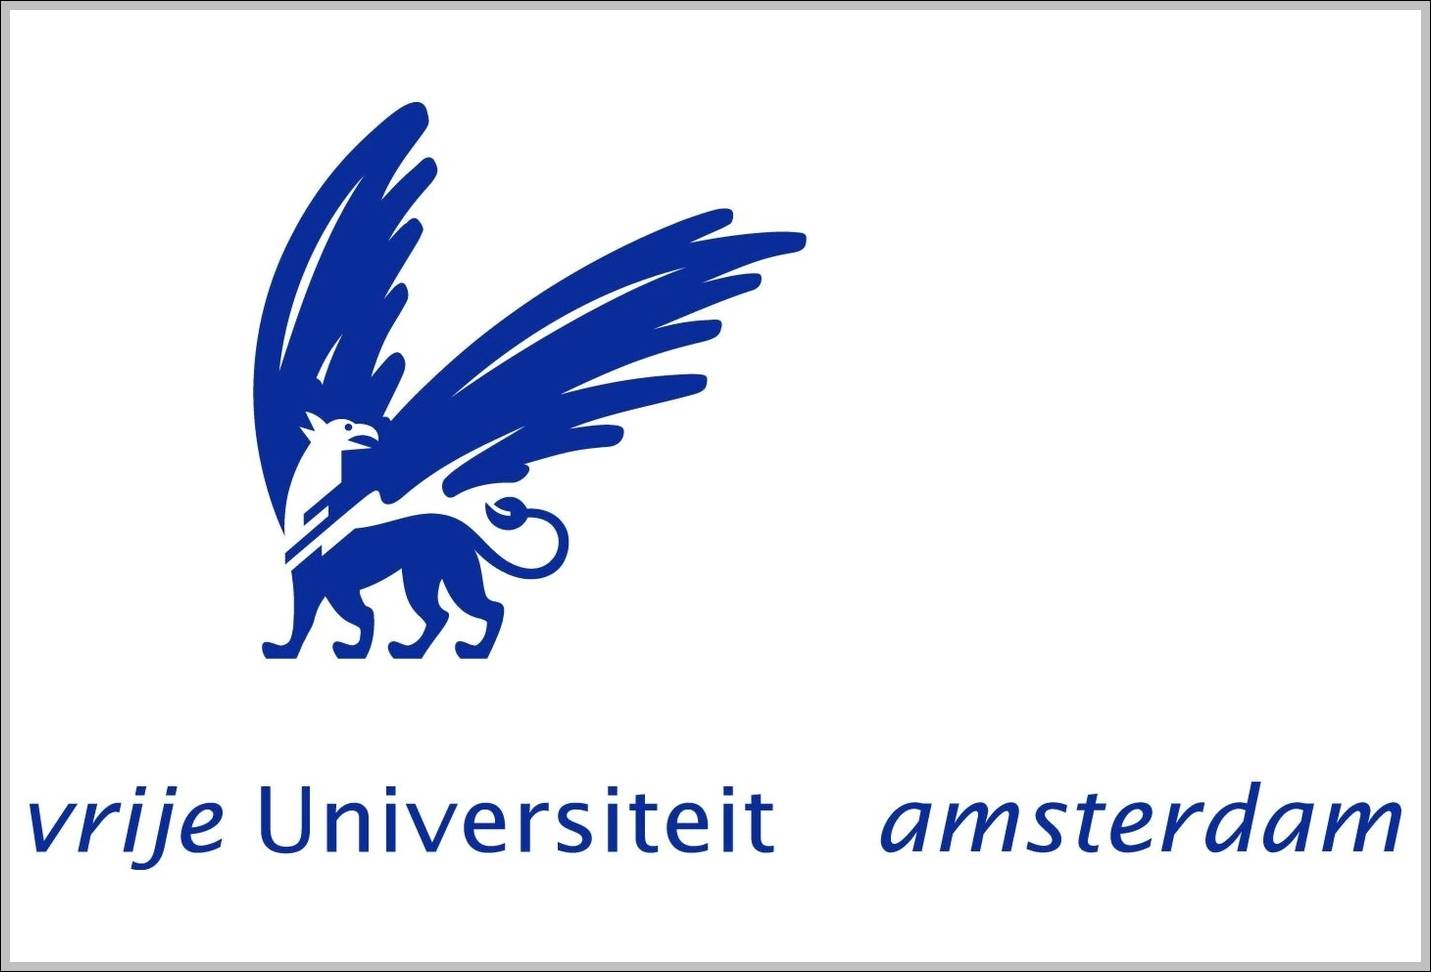 Vrije Universiteit Amsterdam logo old